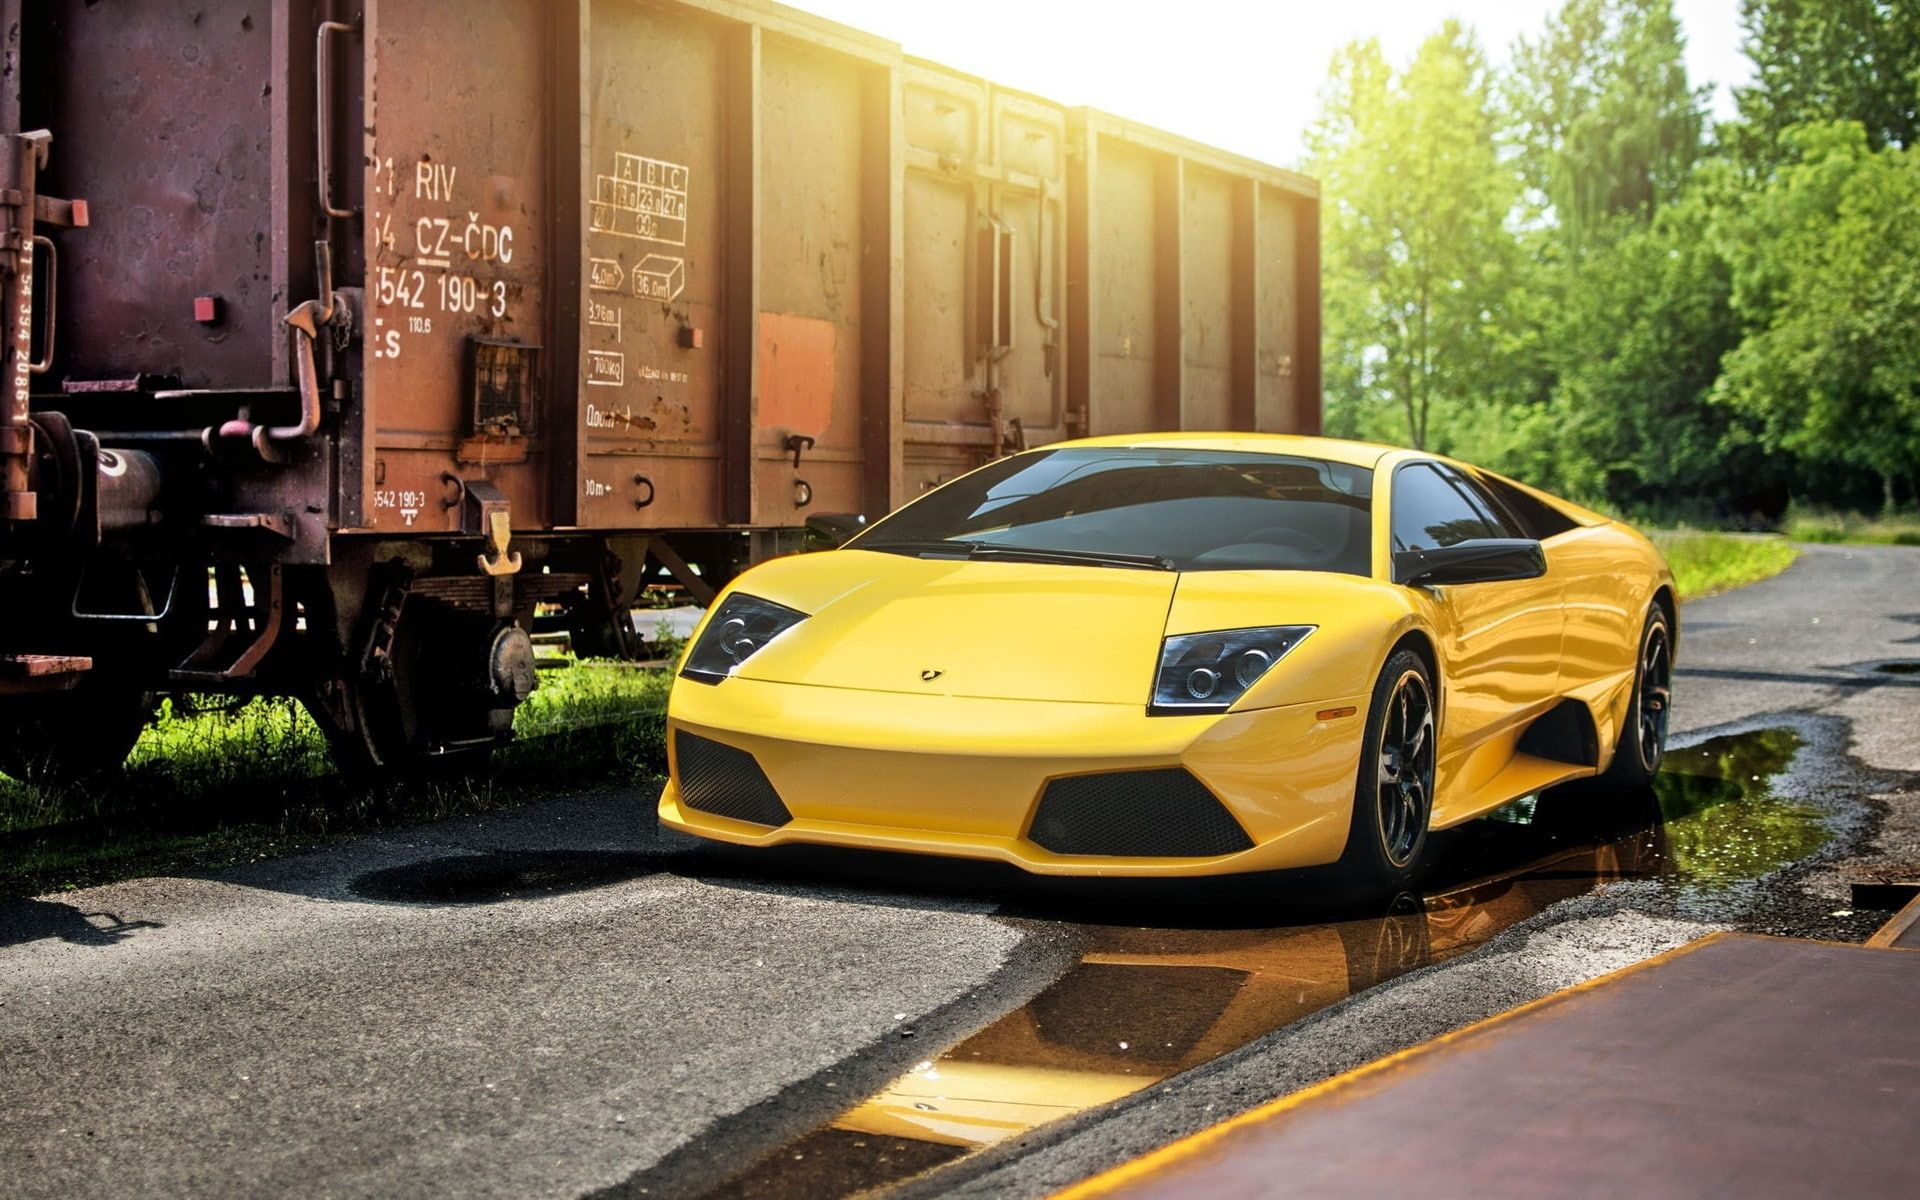 1920x1200 Lamborghini Murcielago LP640-4 yellow supercar, train, yellow and black coupe #Lamborghini #Yellow #Supercar #Tra&acirc;&#128;&brvbar; | Lamborghini murcielago, Super cars, Lamborghini